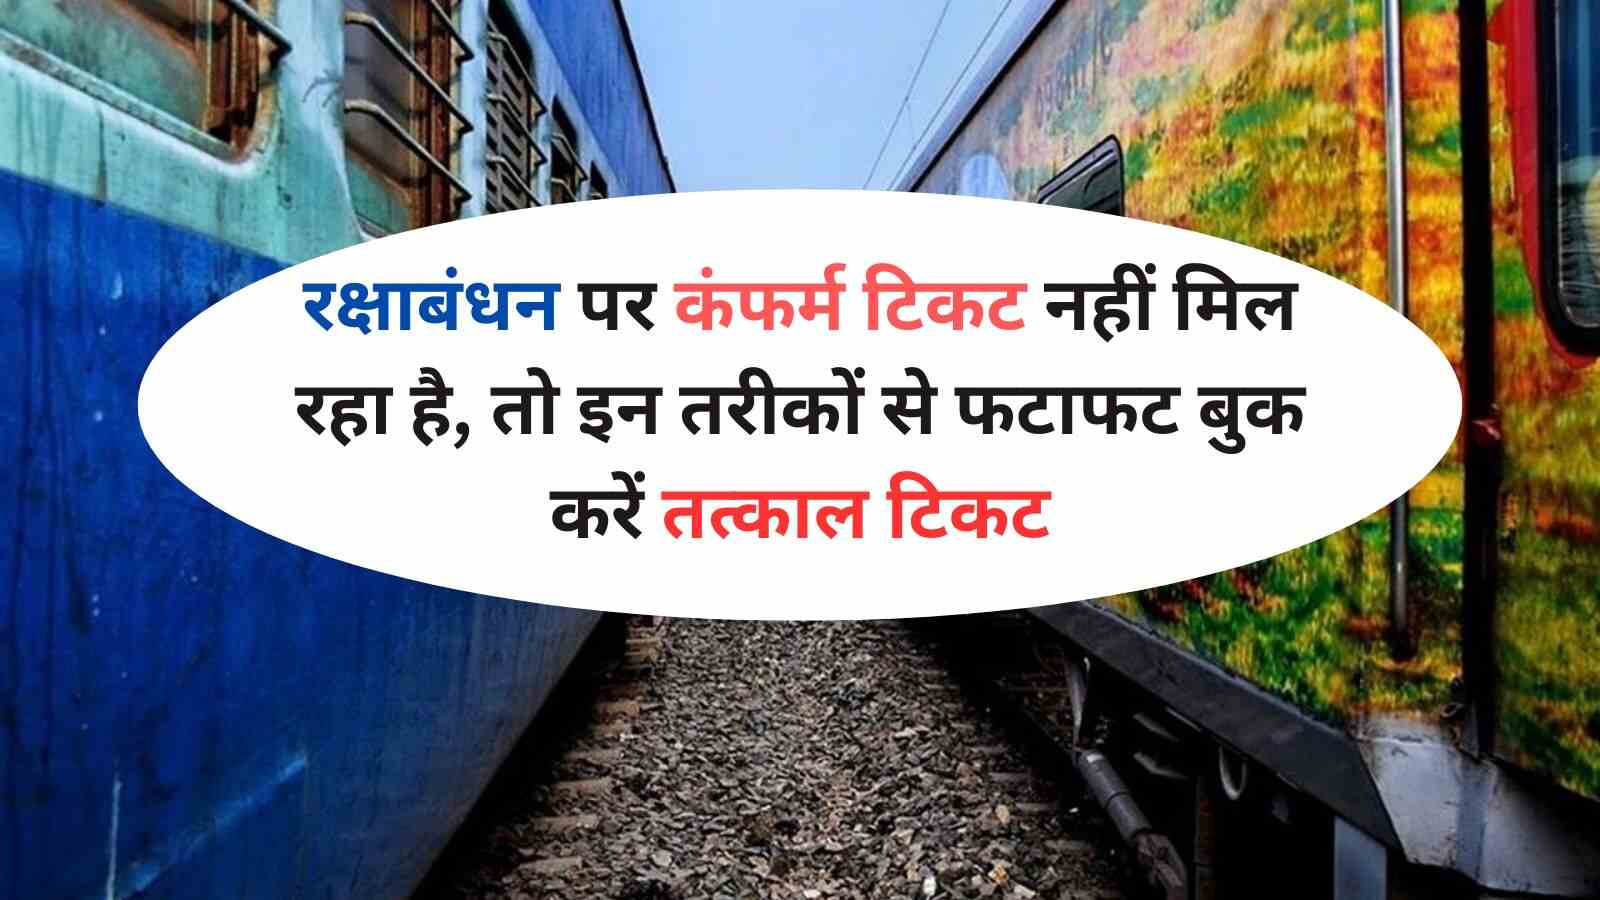 Indian Railways: रक्षाबंधन पर कंफर्म टिकट नहीं मिल रहा है, तो इन तरीकों से फटाफट बुक करें तत्काल टिकट